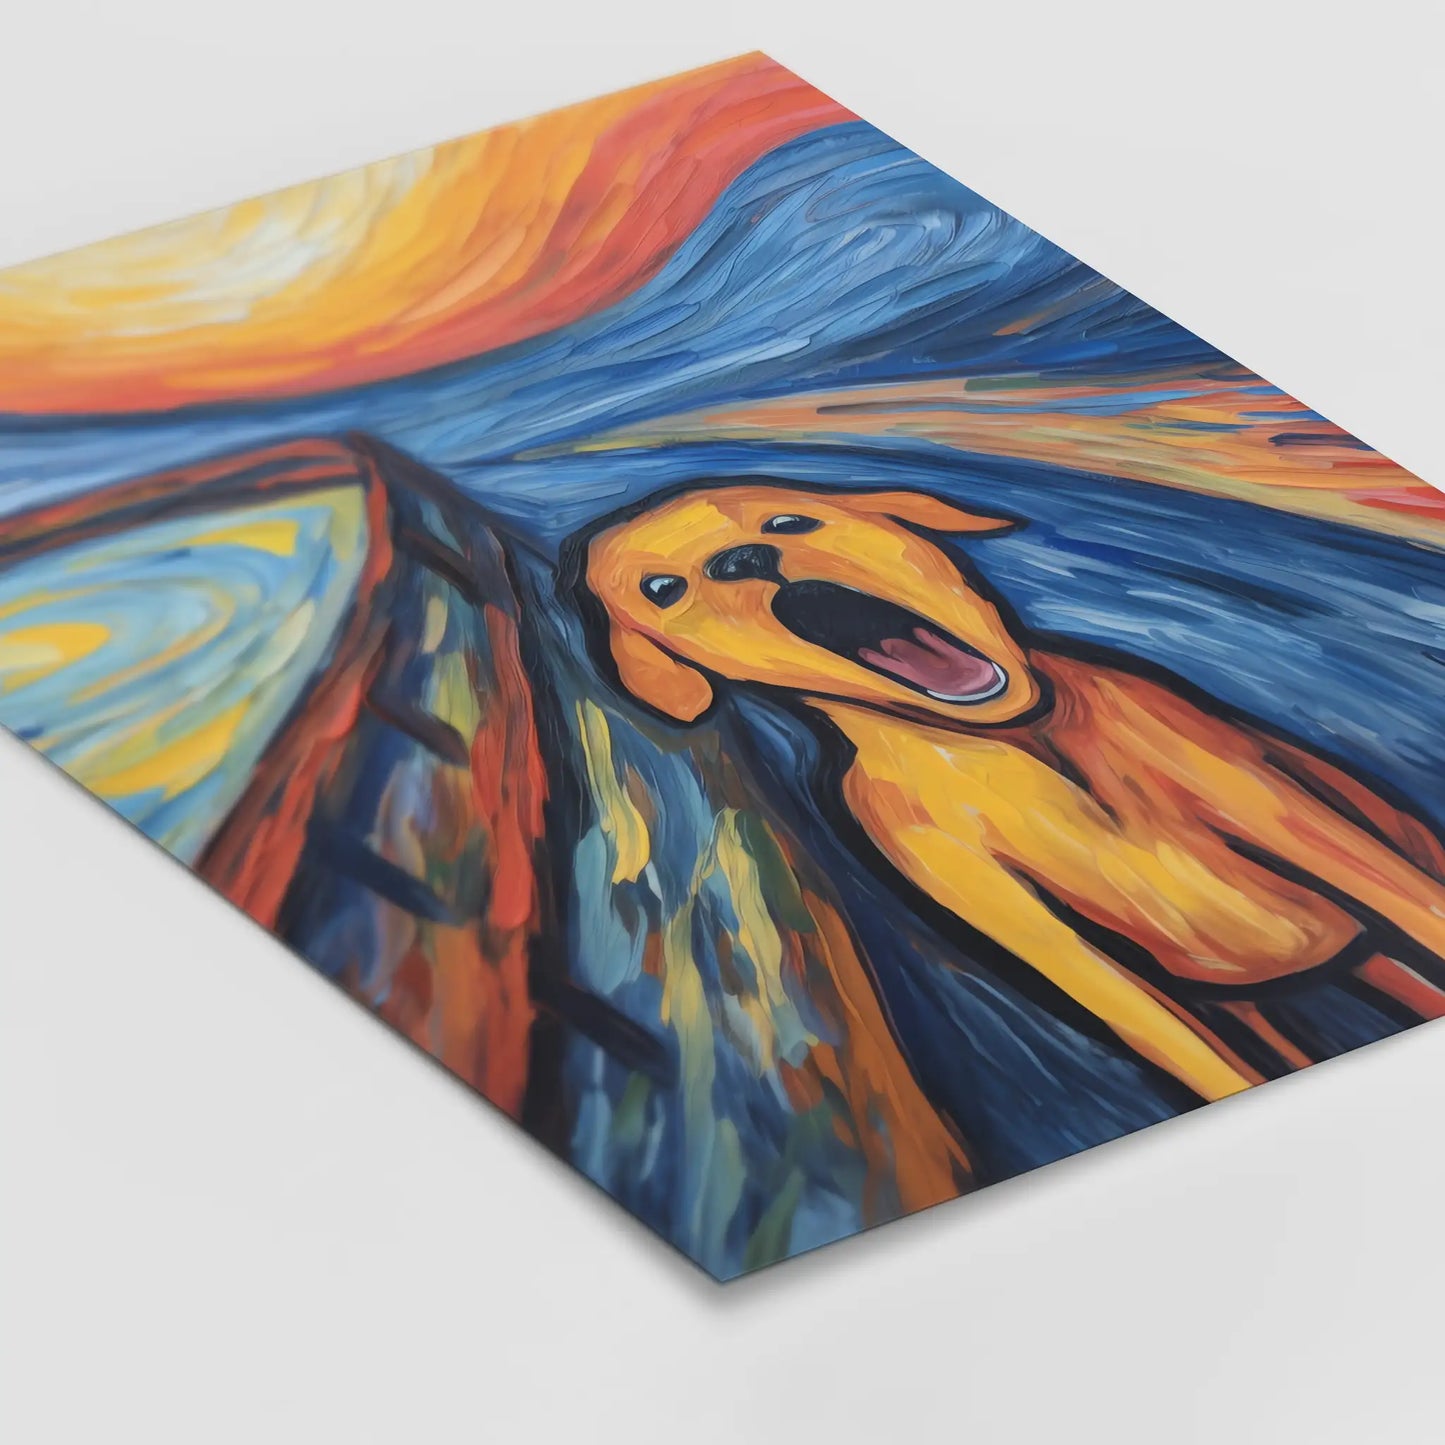 The Scream- Hund - Abstrakte Kunst - Doge - Dog Gemälde - Bunt - Poster